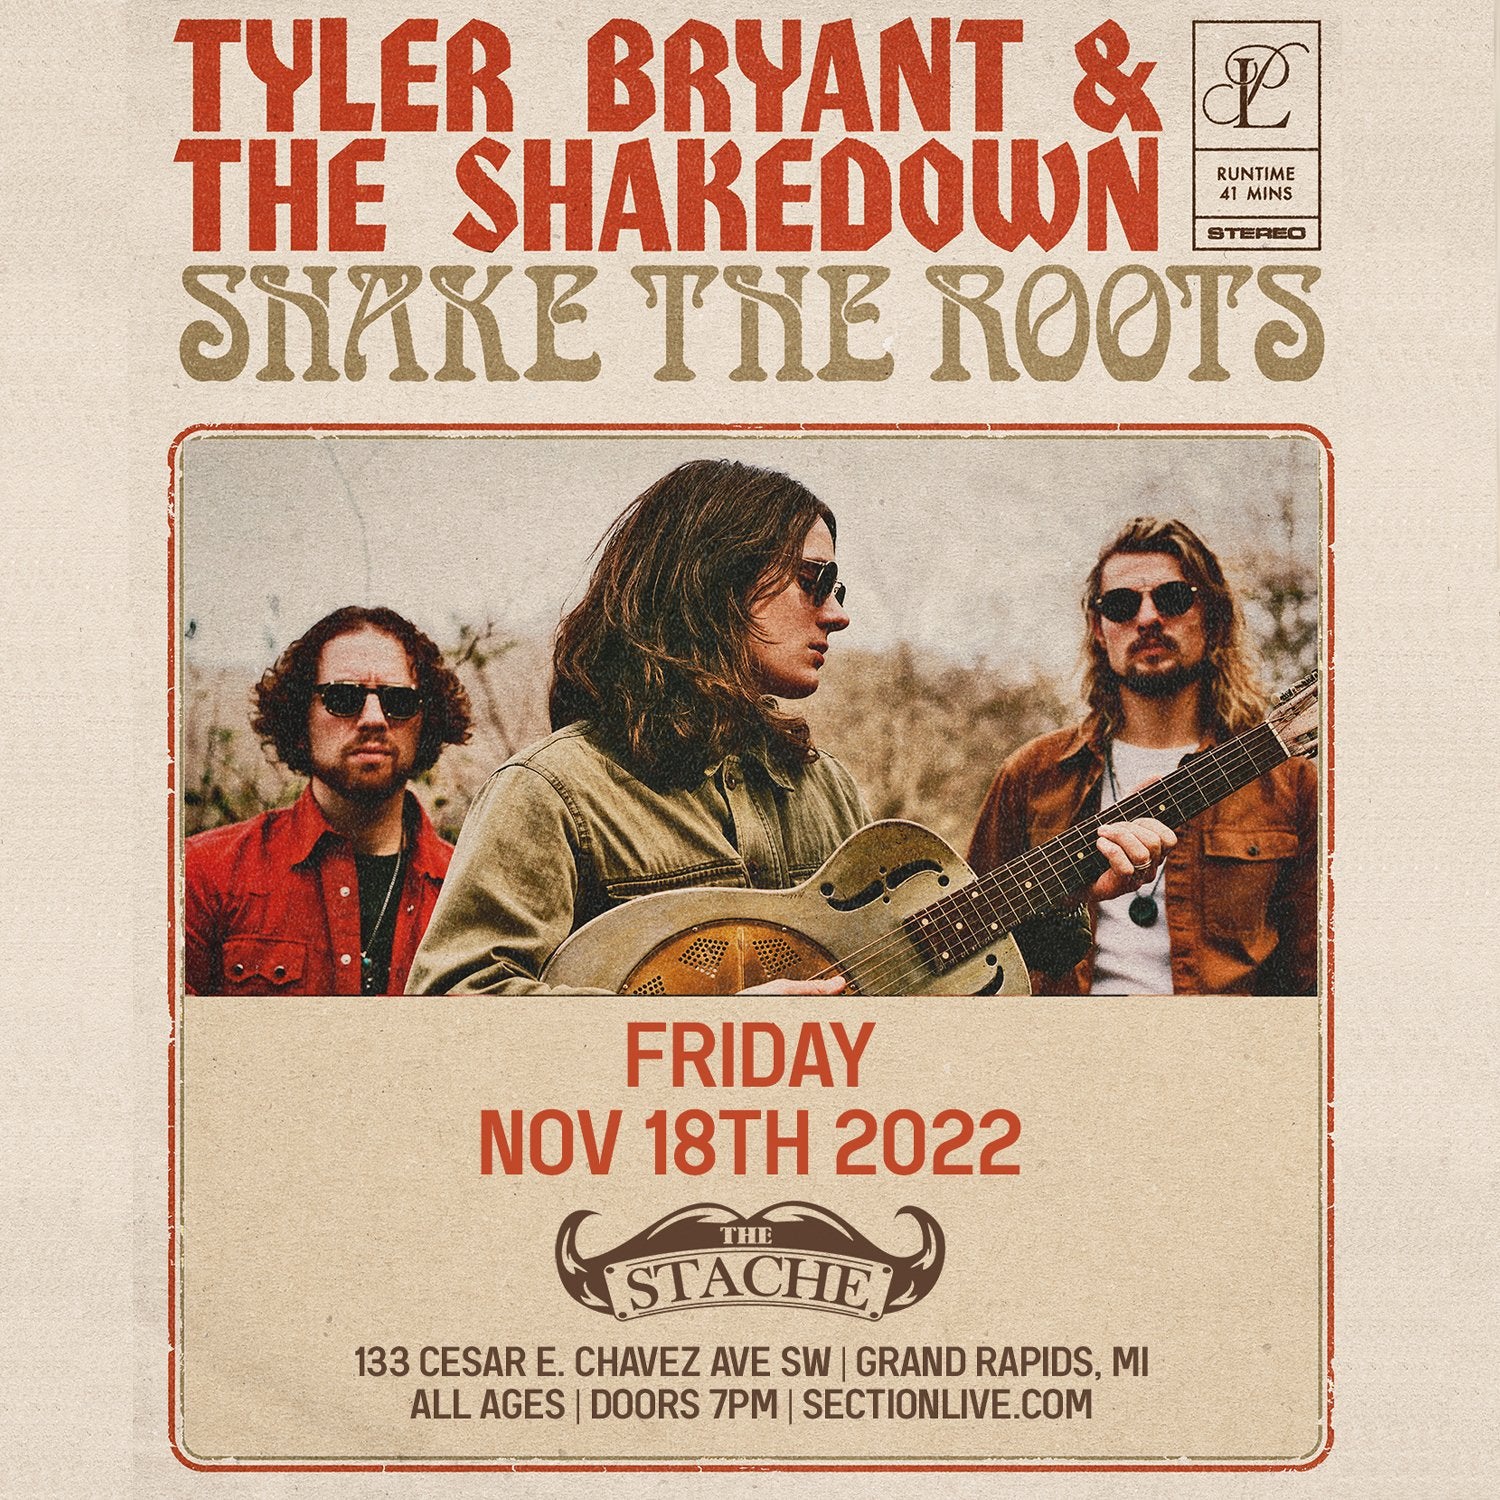 Tyler Brant & The Shakedown und ihr neues Album Shake The Roots